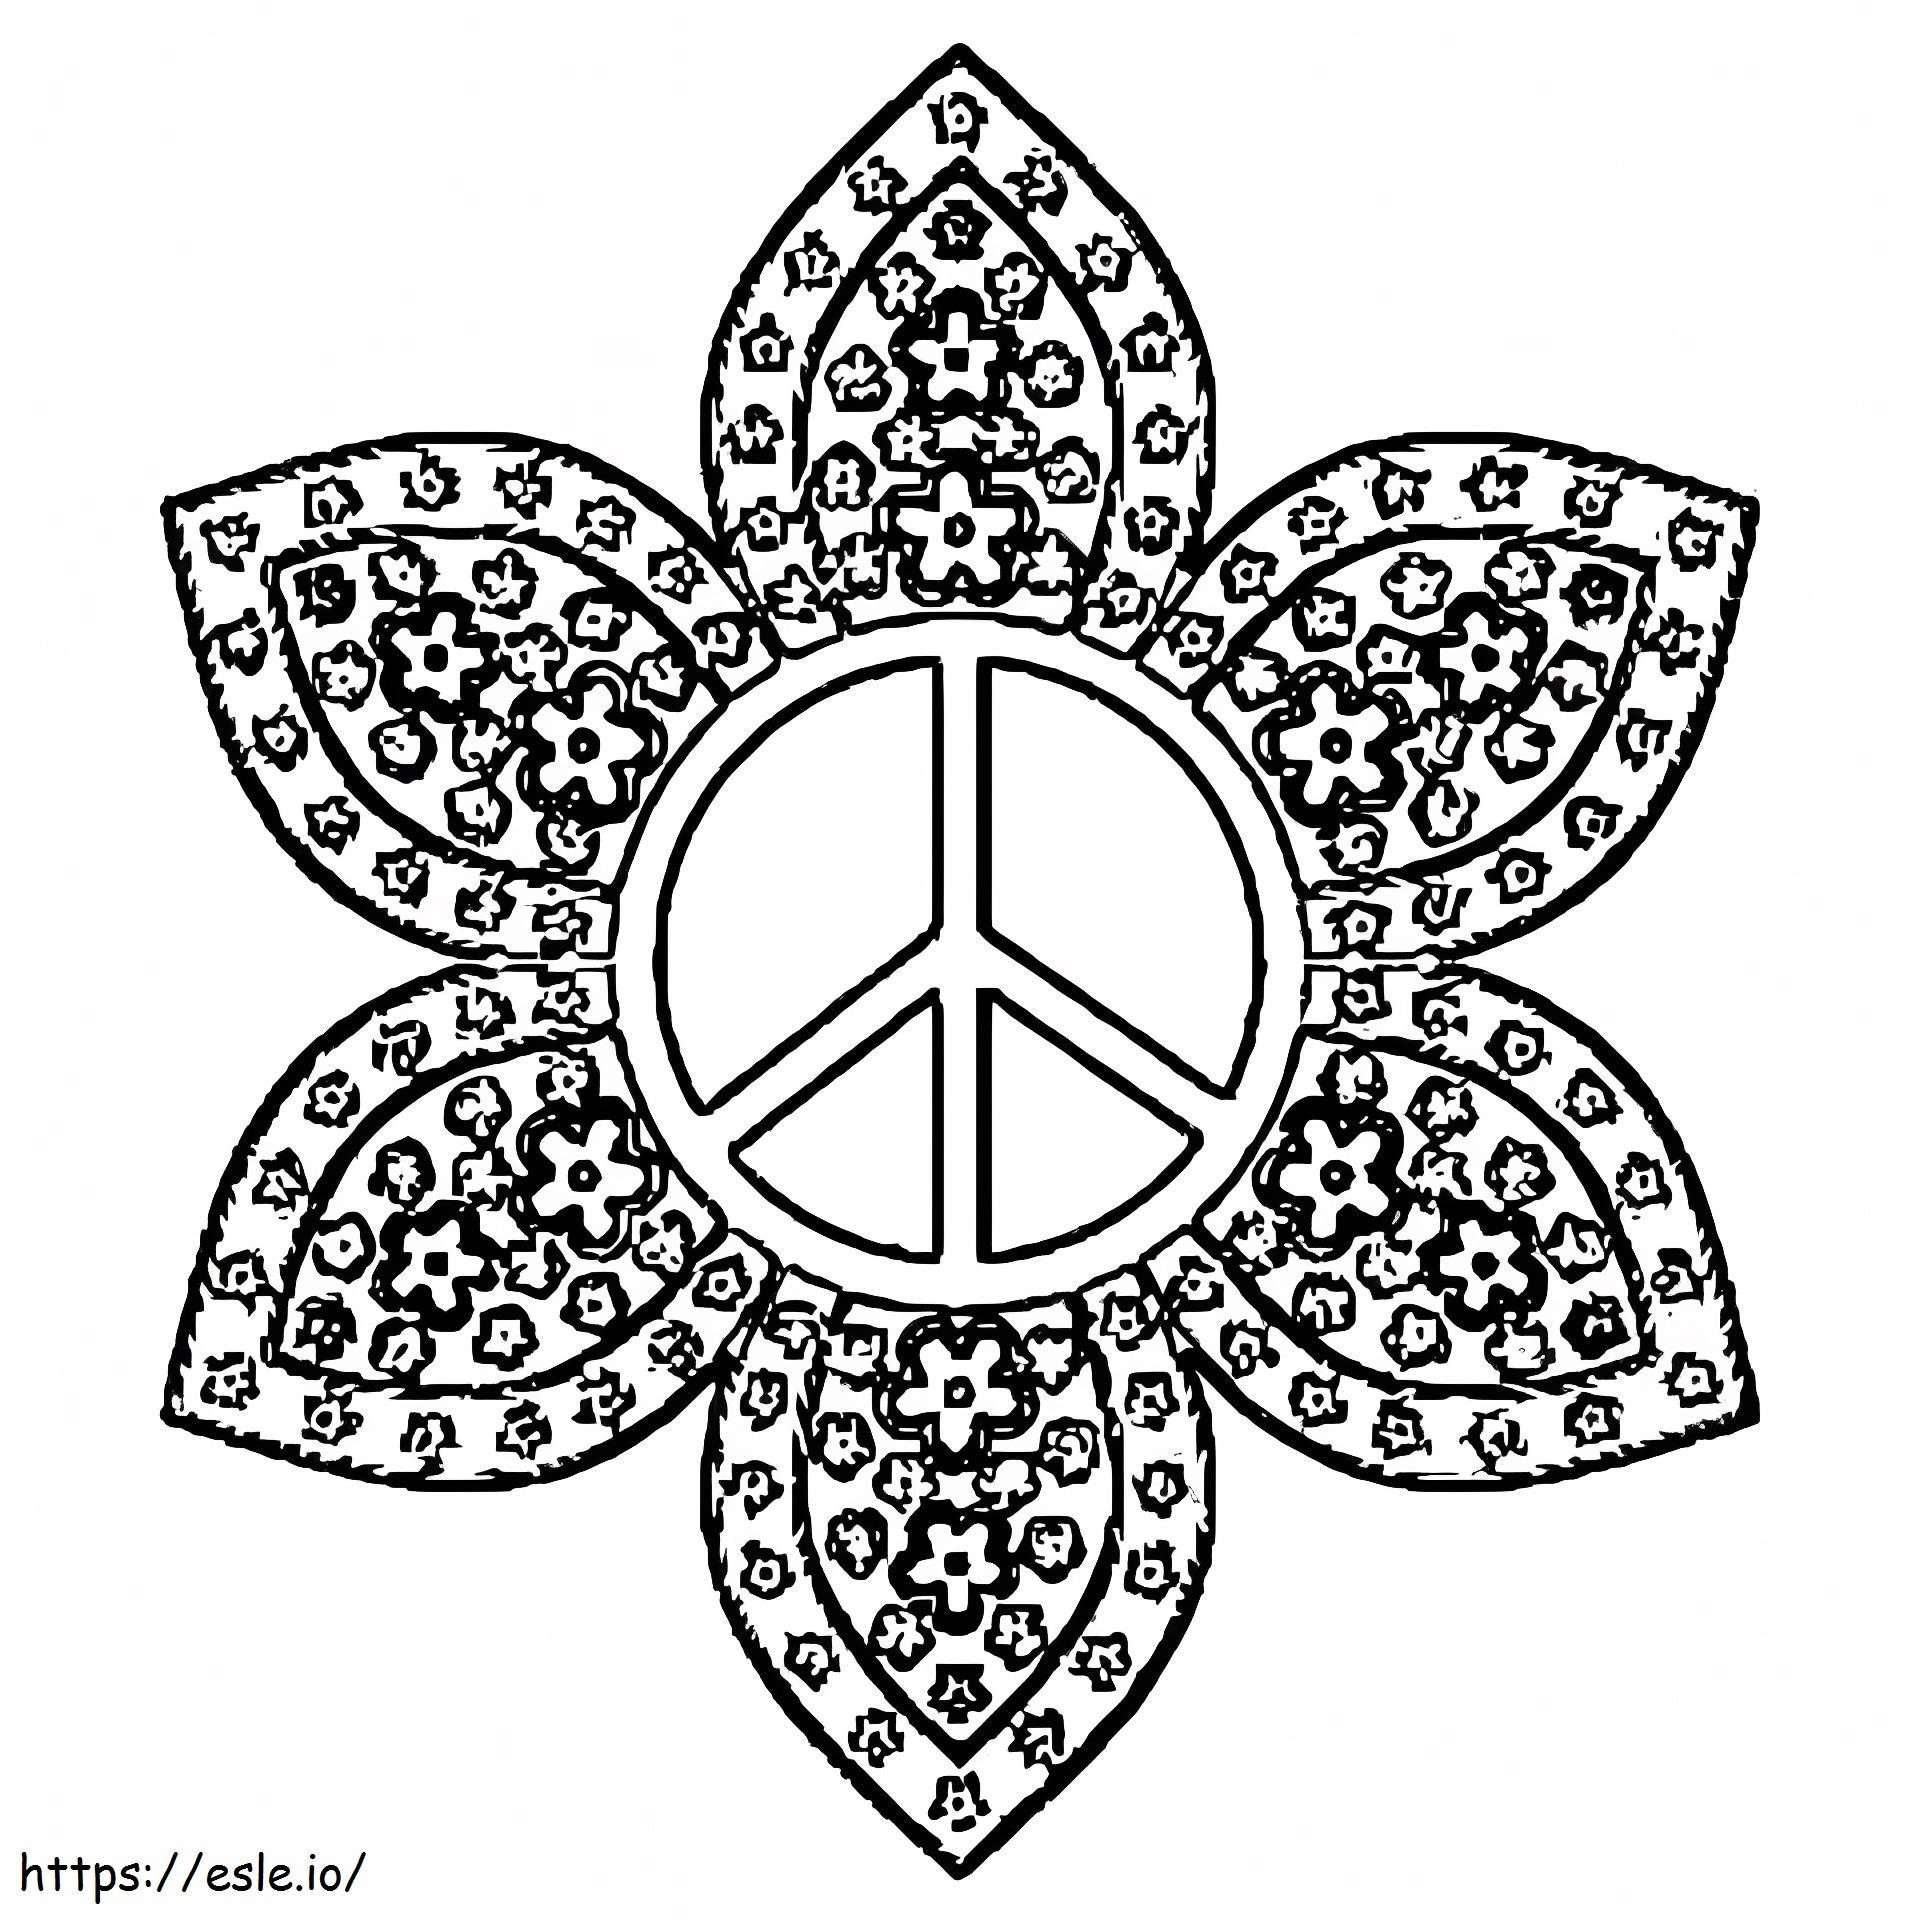 Friedenszeichen-Mandala ausmalbilder